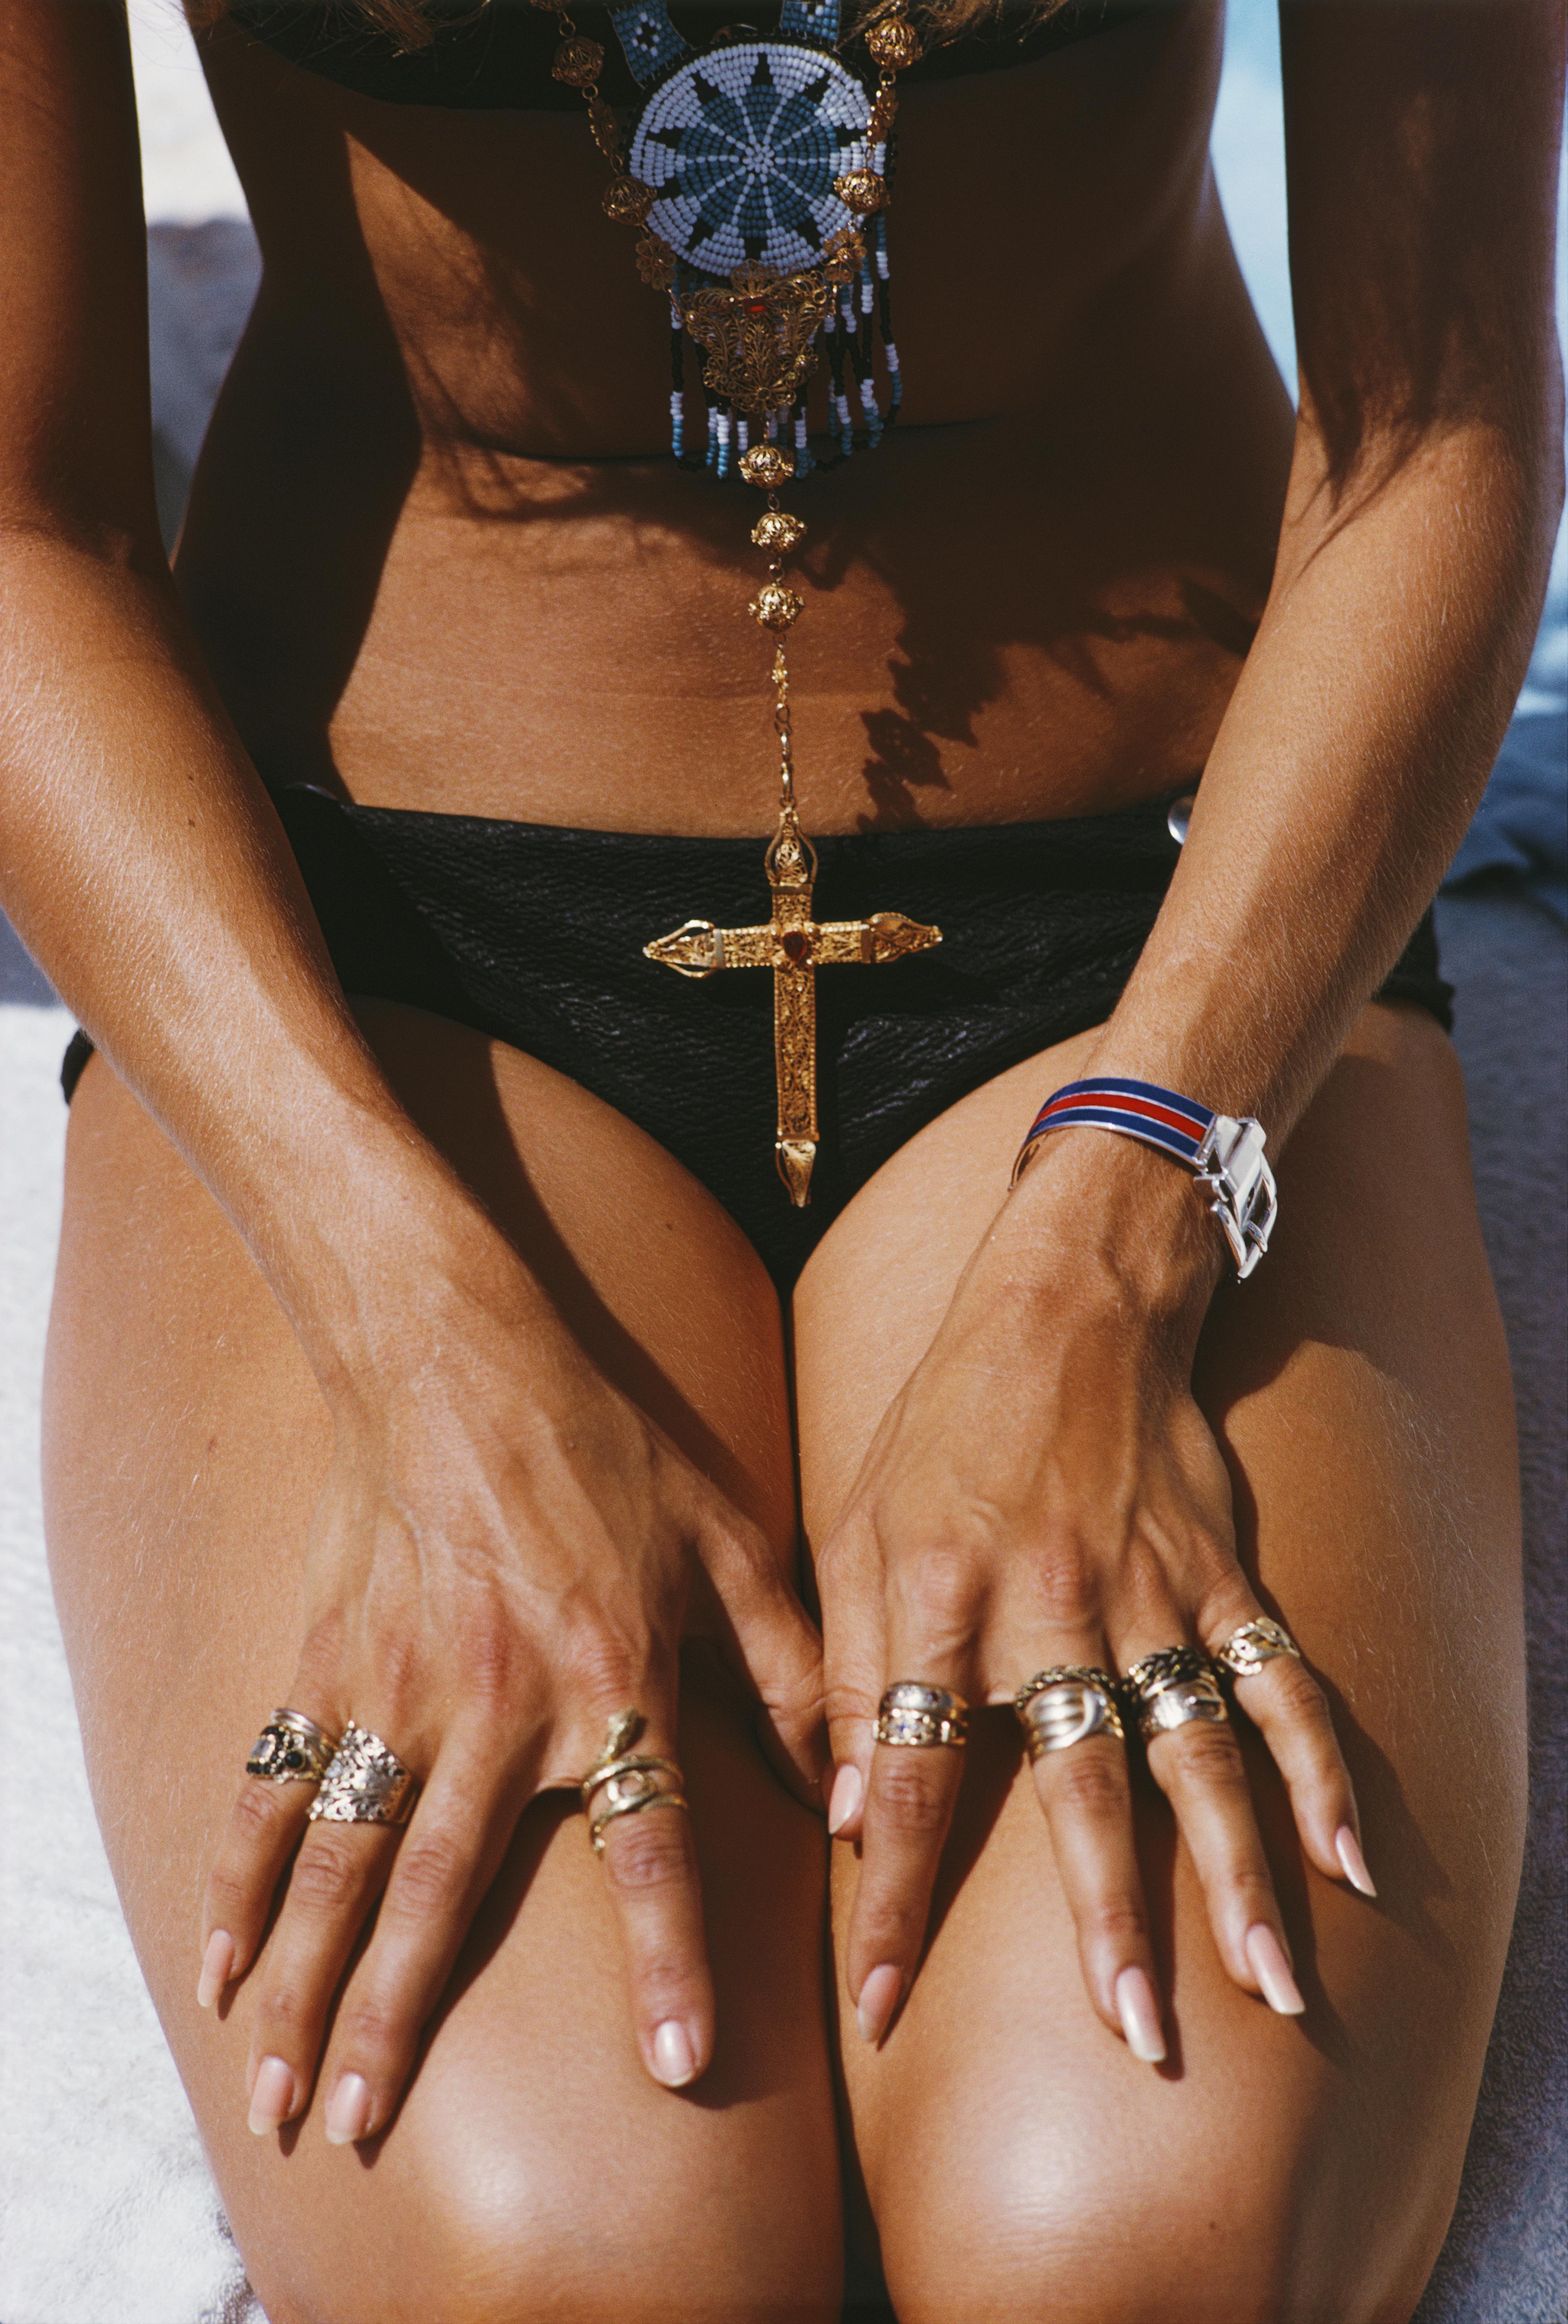 1968, Eine kniende Sonnenanbeterin zeigt ihre Ringe und ihren Anhänger an einem Strand in Capri, Italien.

Schlanke Aarons
Capri-Braun
Hotel Punta Tragara, Capri, Italien
Chromogener Lambda-Druck
Später gedruckt
Slim Aarons Estate